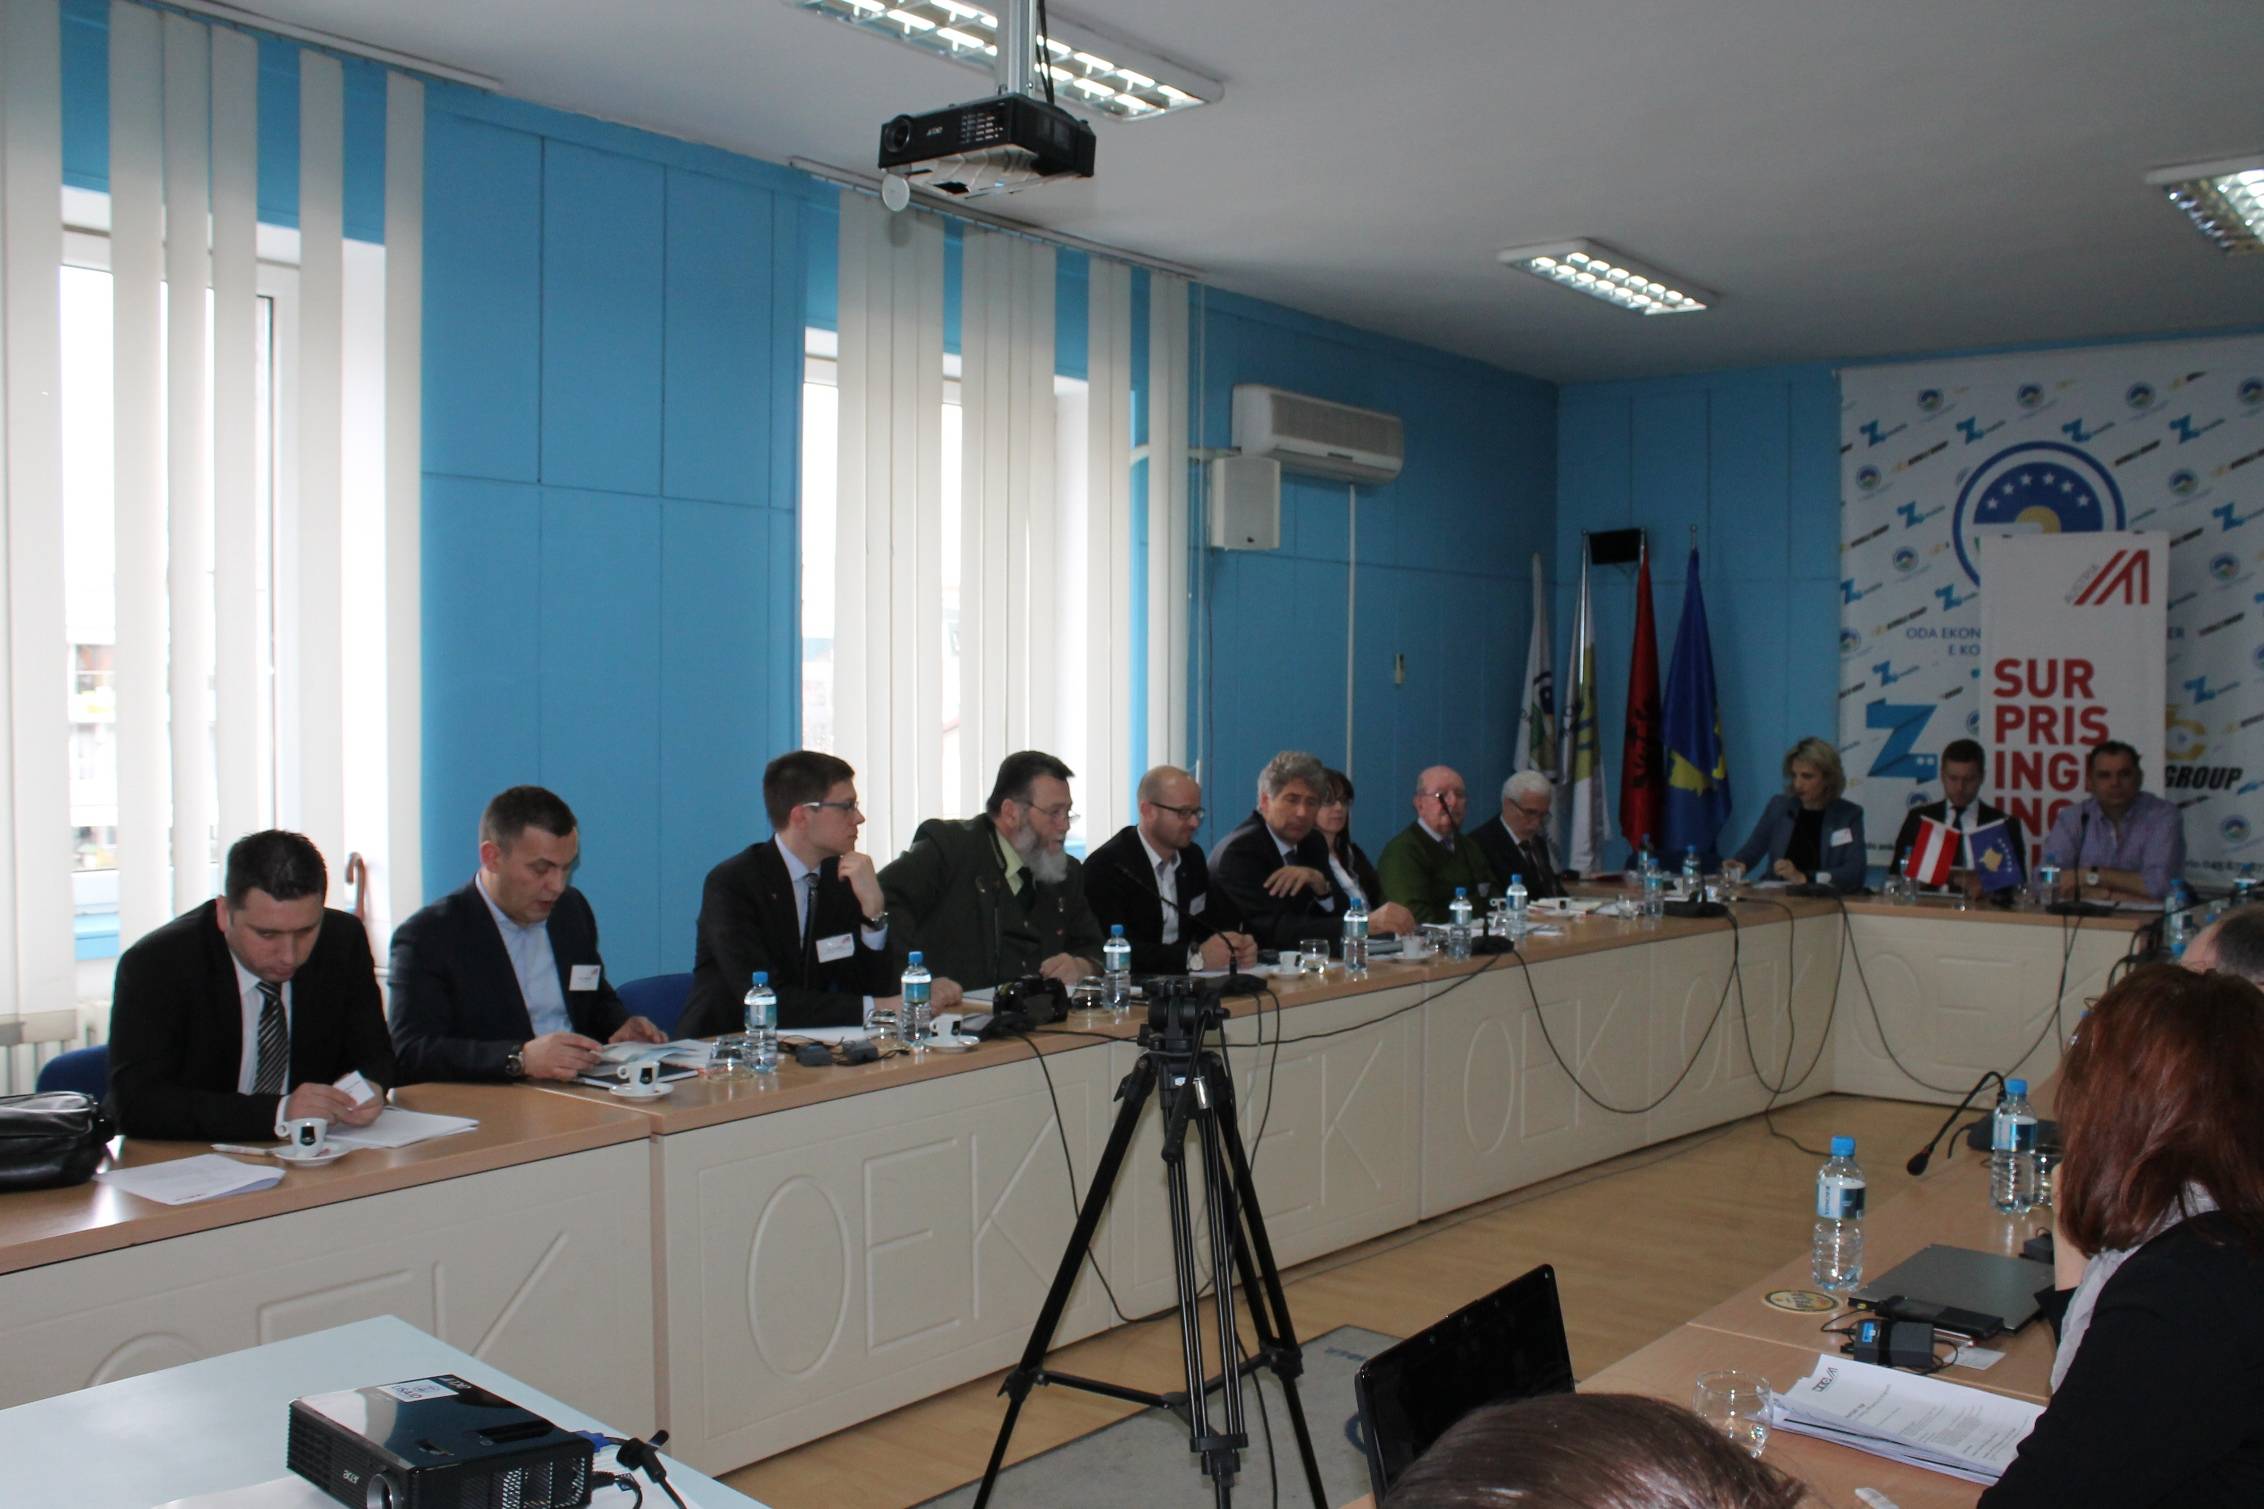 Energjia njeri nder prioritete e zhvillimit ekonomik te Kosovës 